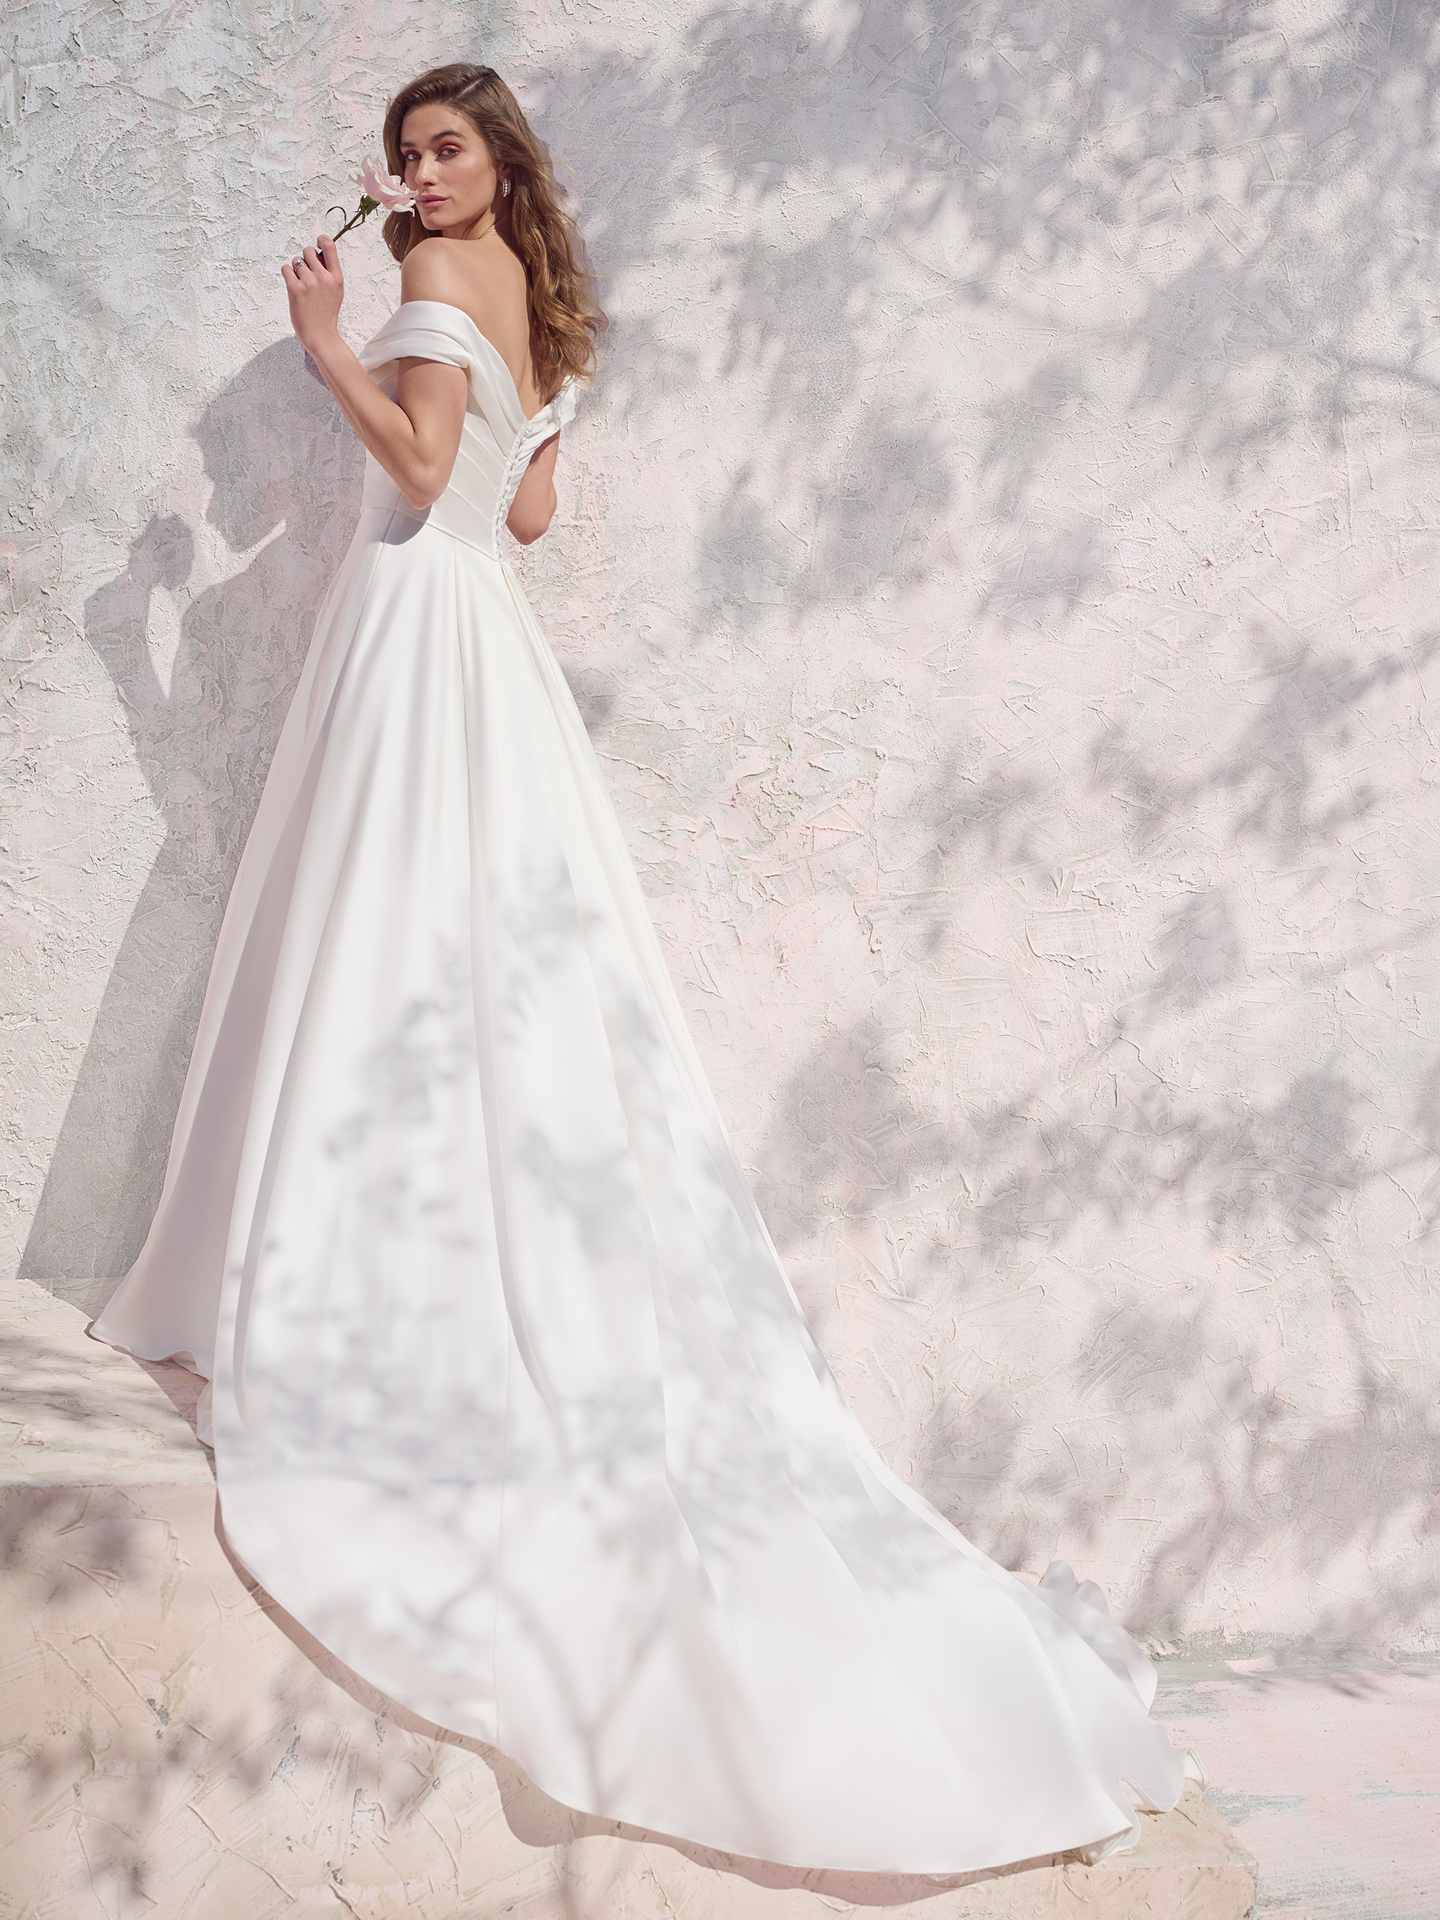 La mariée porte une robe de mariée simple appelée Ekaterina par Maggie Sottero